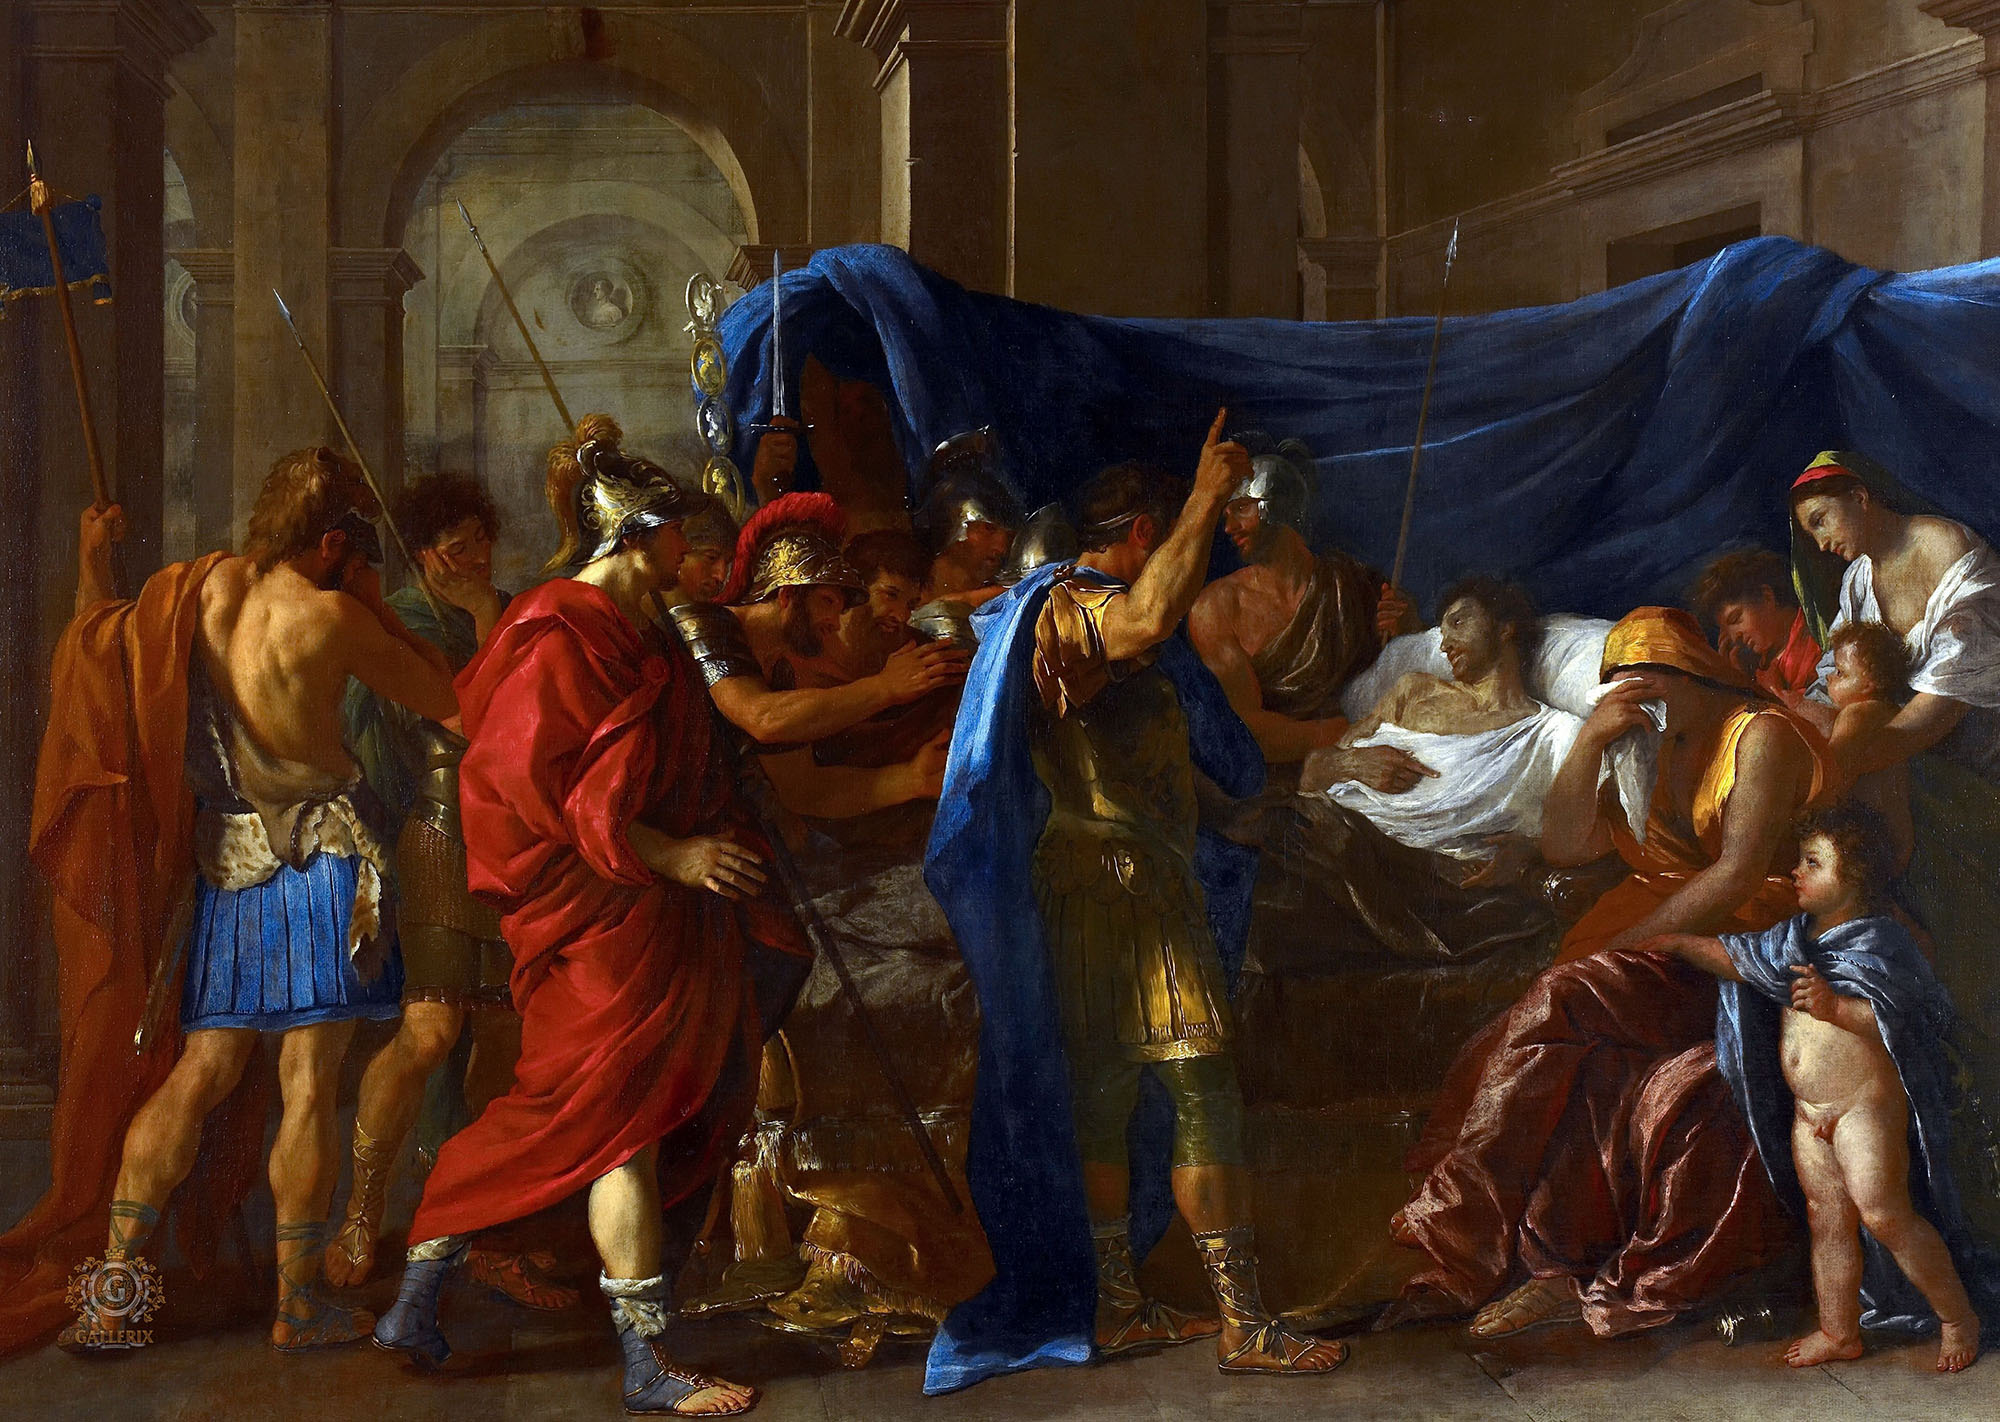 Никола Пуссен. "Смерть Германика". 1627. Институт искусств, Миннеаполис.